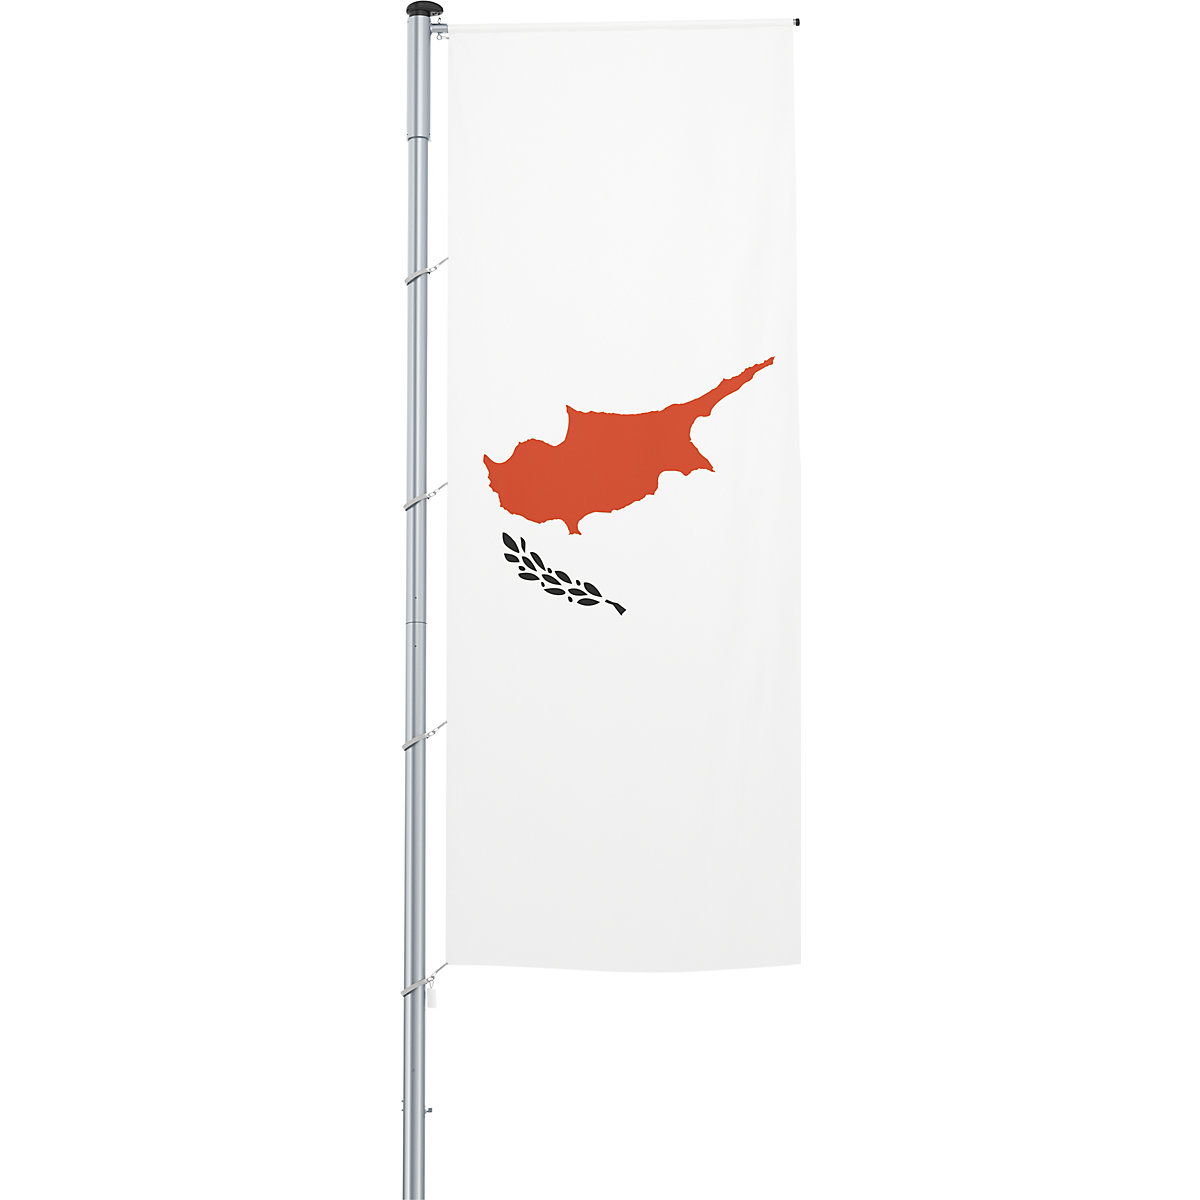 Vlajka na pozdĺžne upevnenie na stožiar/národná vlajka – Mannus, formát 1,2 x 3 m, Cyprus-3